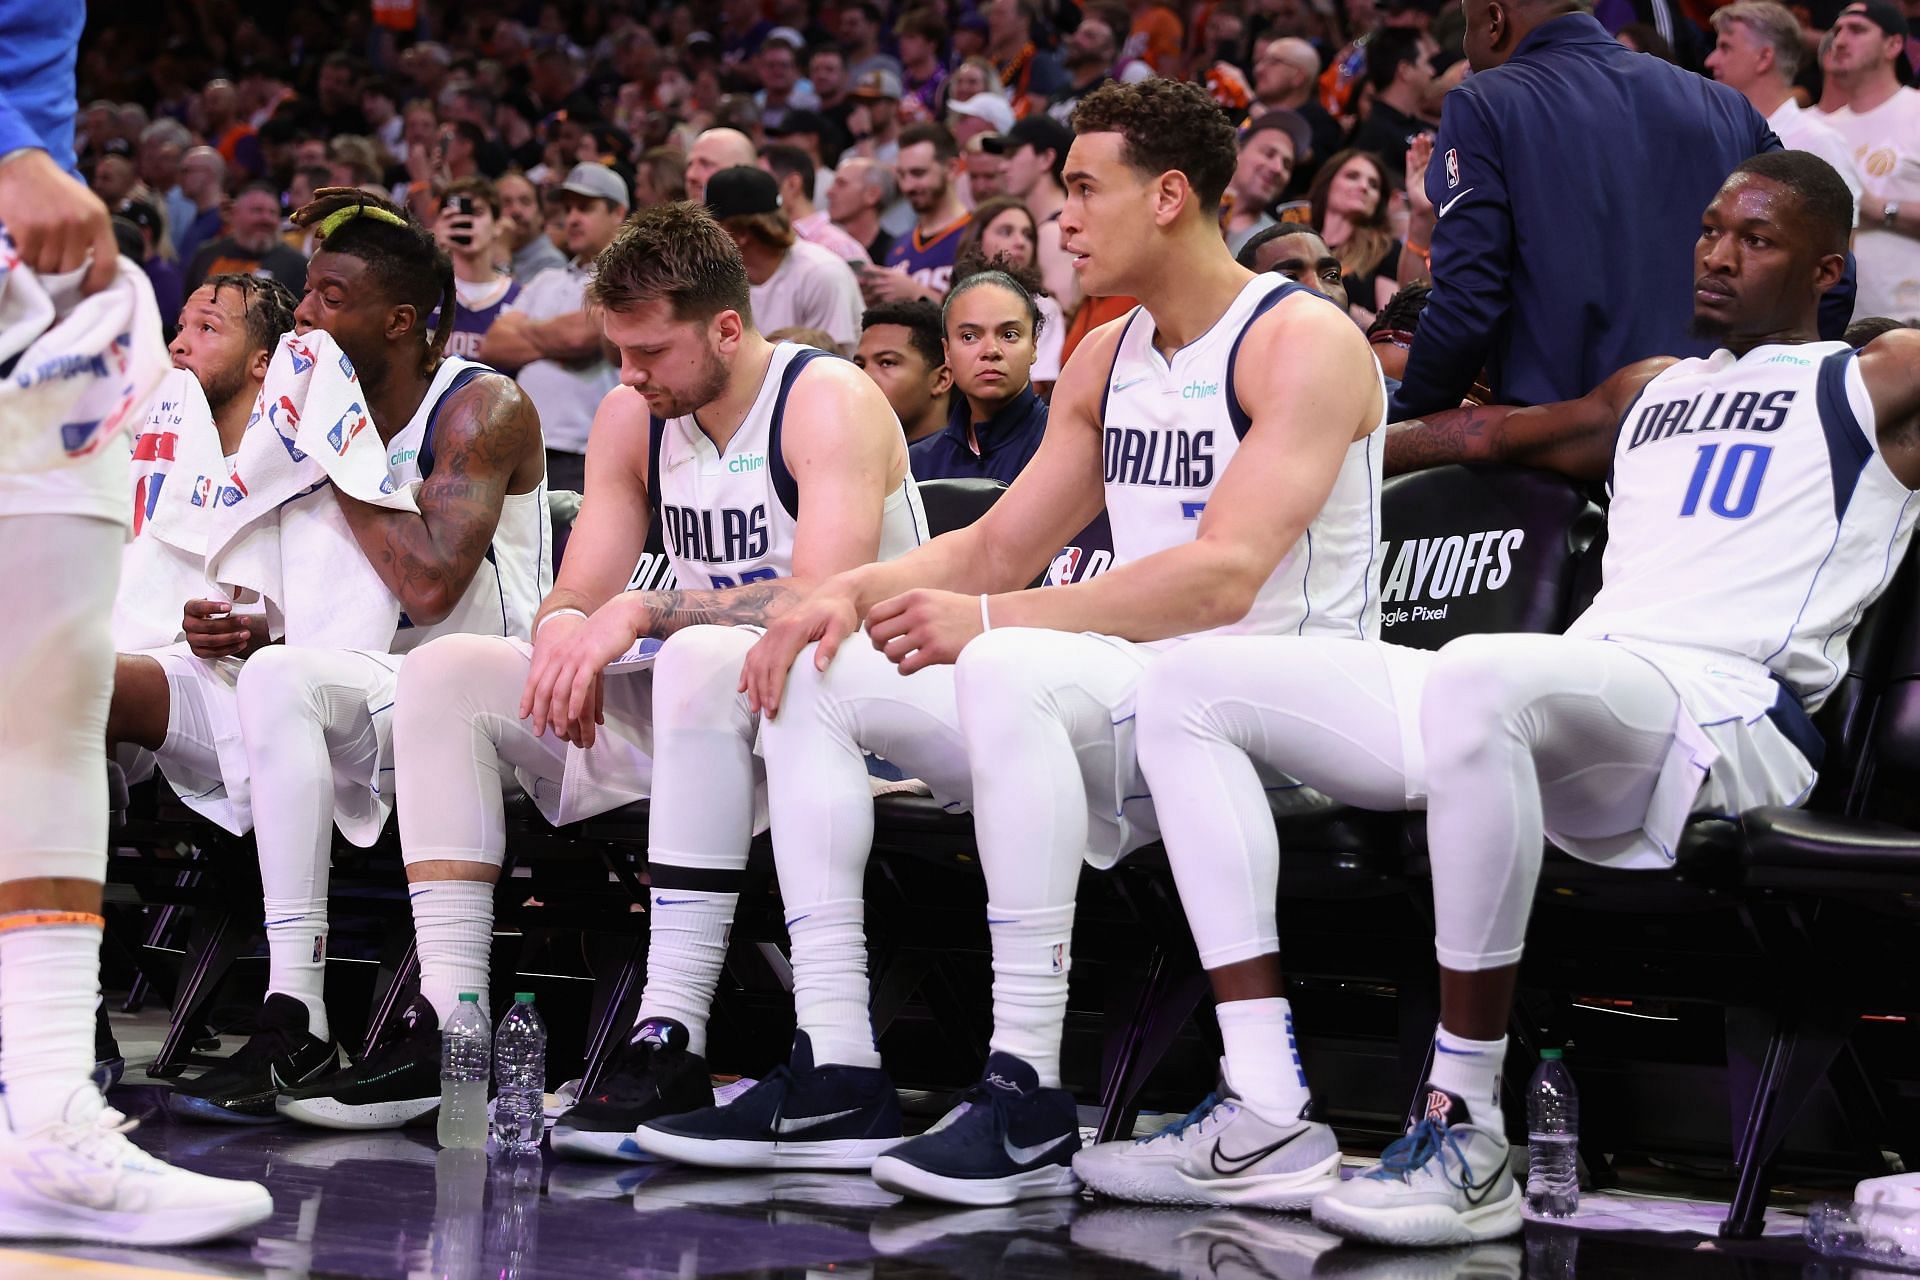 The Dallas Mavericks were fined for improper bench decorum.